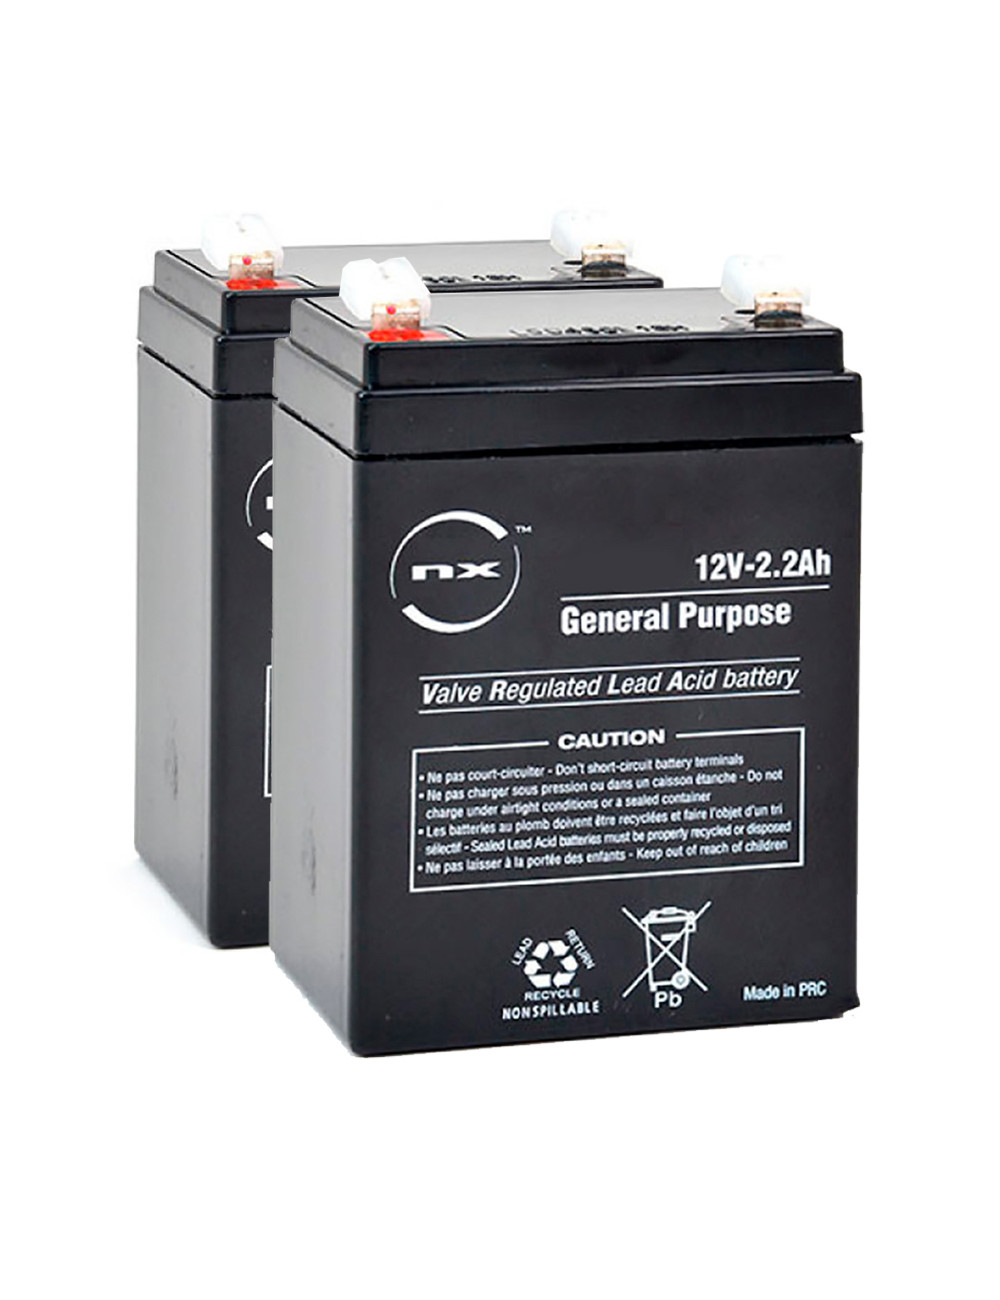 Pack 2 baterías para salvaescaleras Handicare 1100 de 12V 2,2Ah C20 NX2.2-12 - 2xNX2.2-12 -  - 3660766401083 - 1